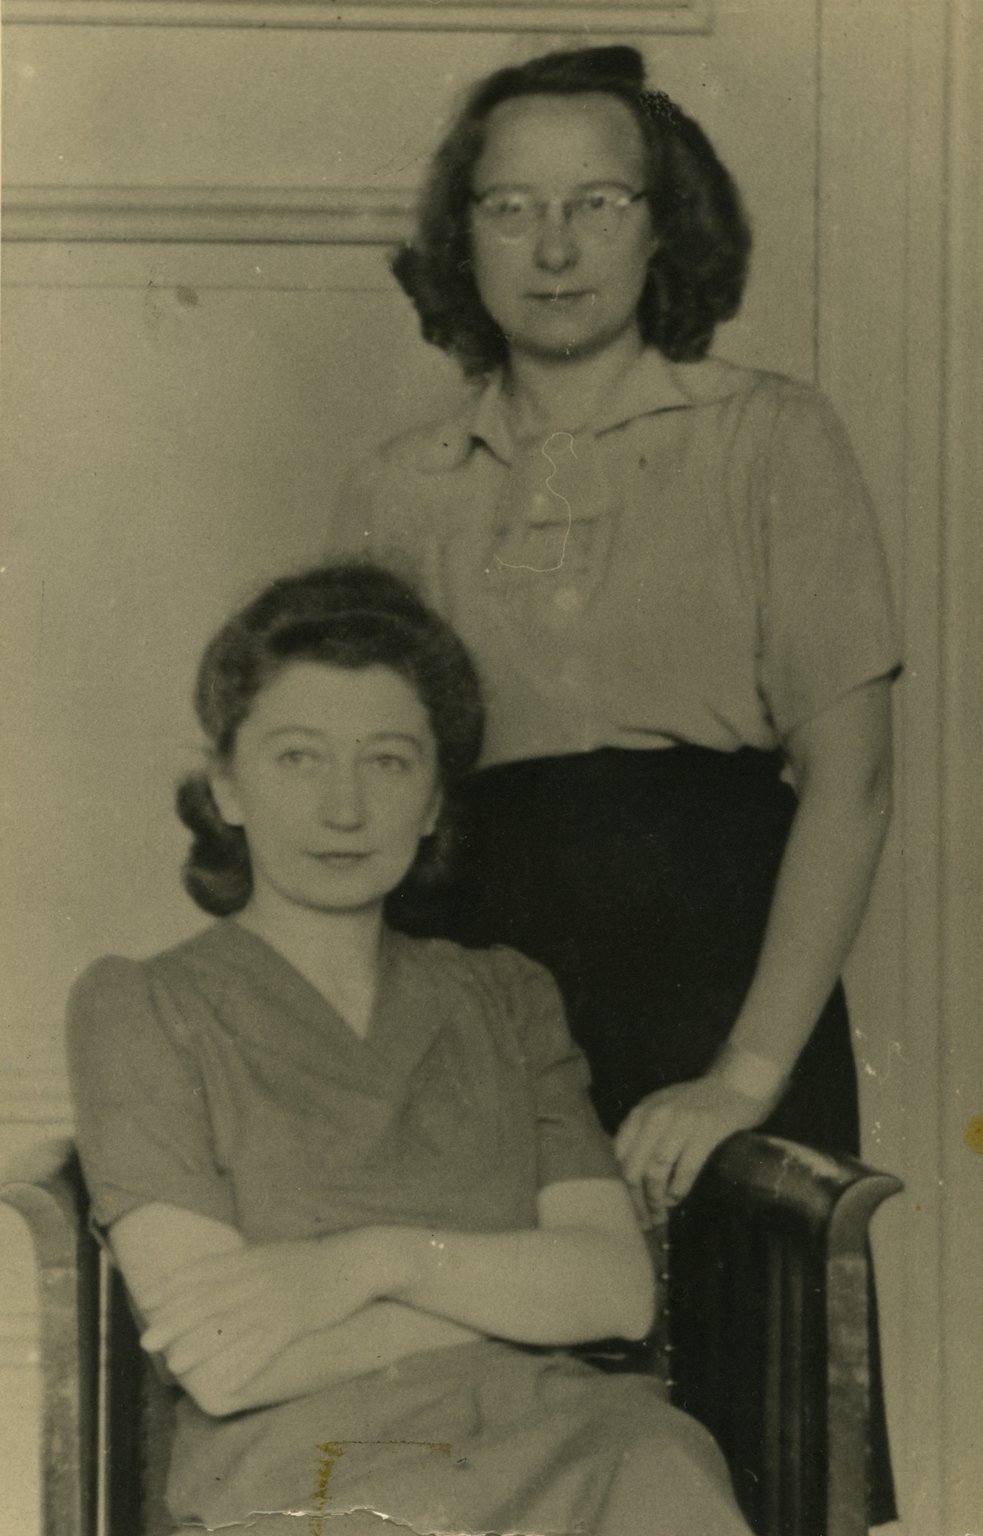 Miep Gies (zittend) en Bep Voskuijl in het voorkantoor, Prinsengracht 263. Amsterdam, augustus 1945.